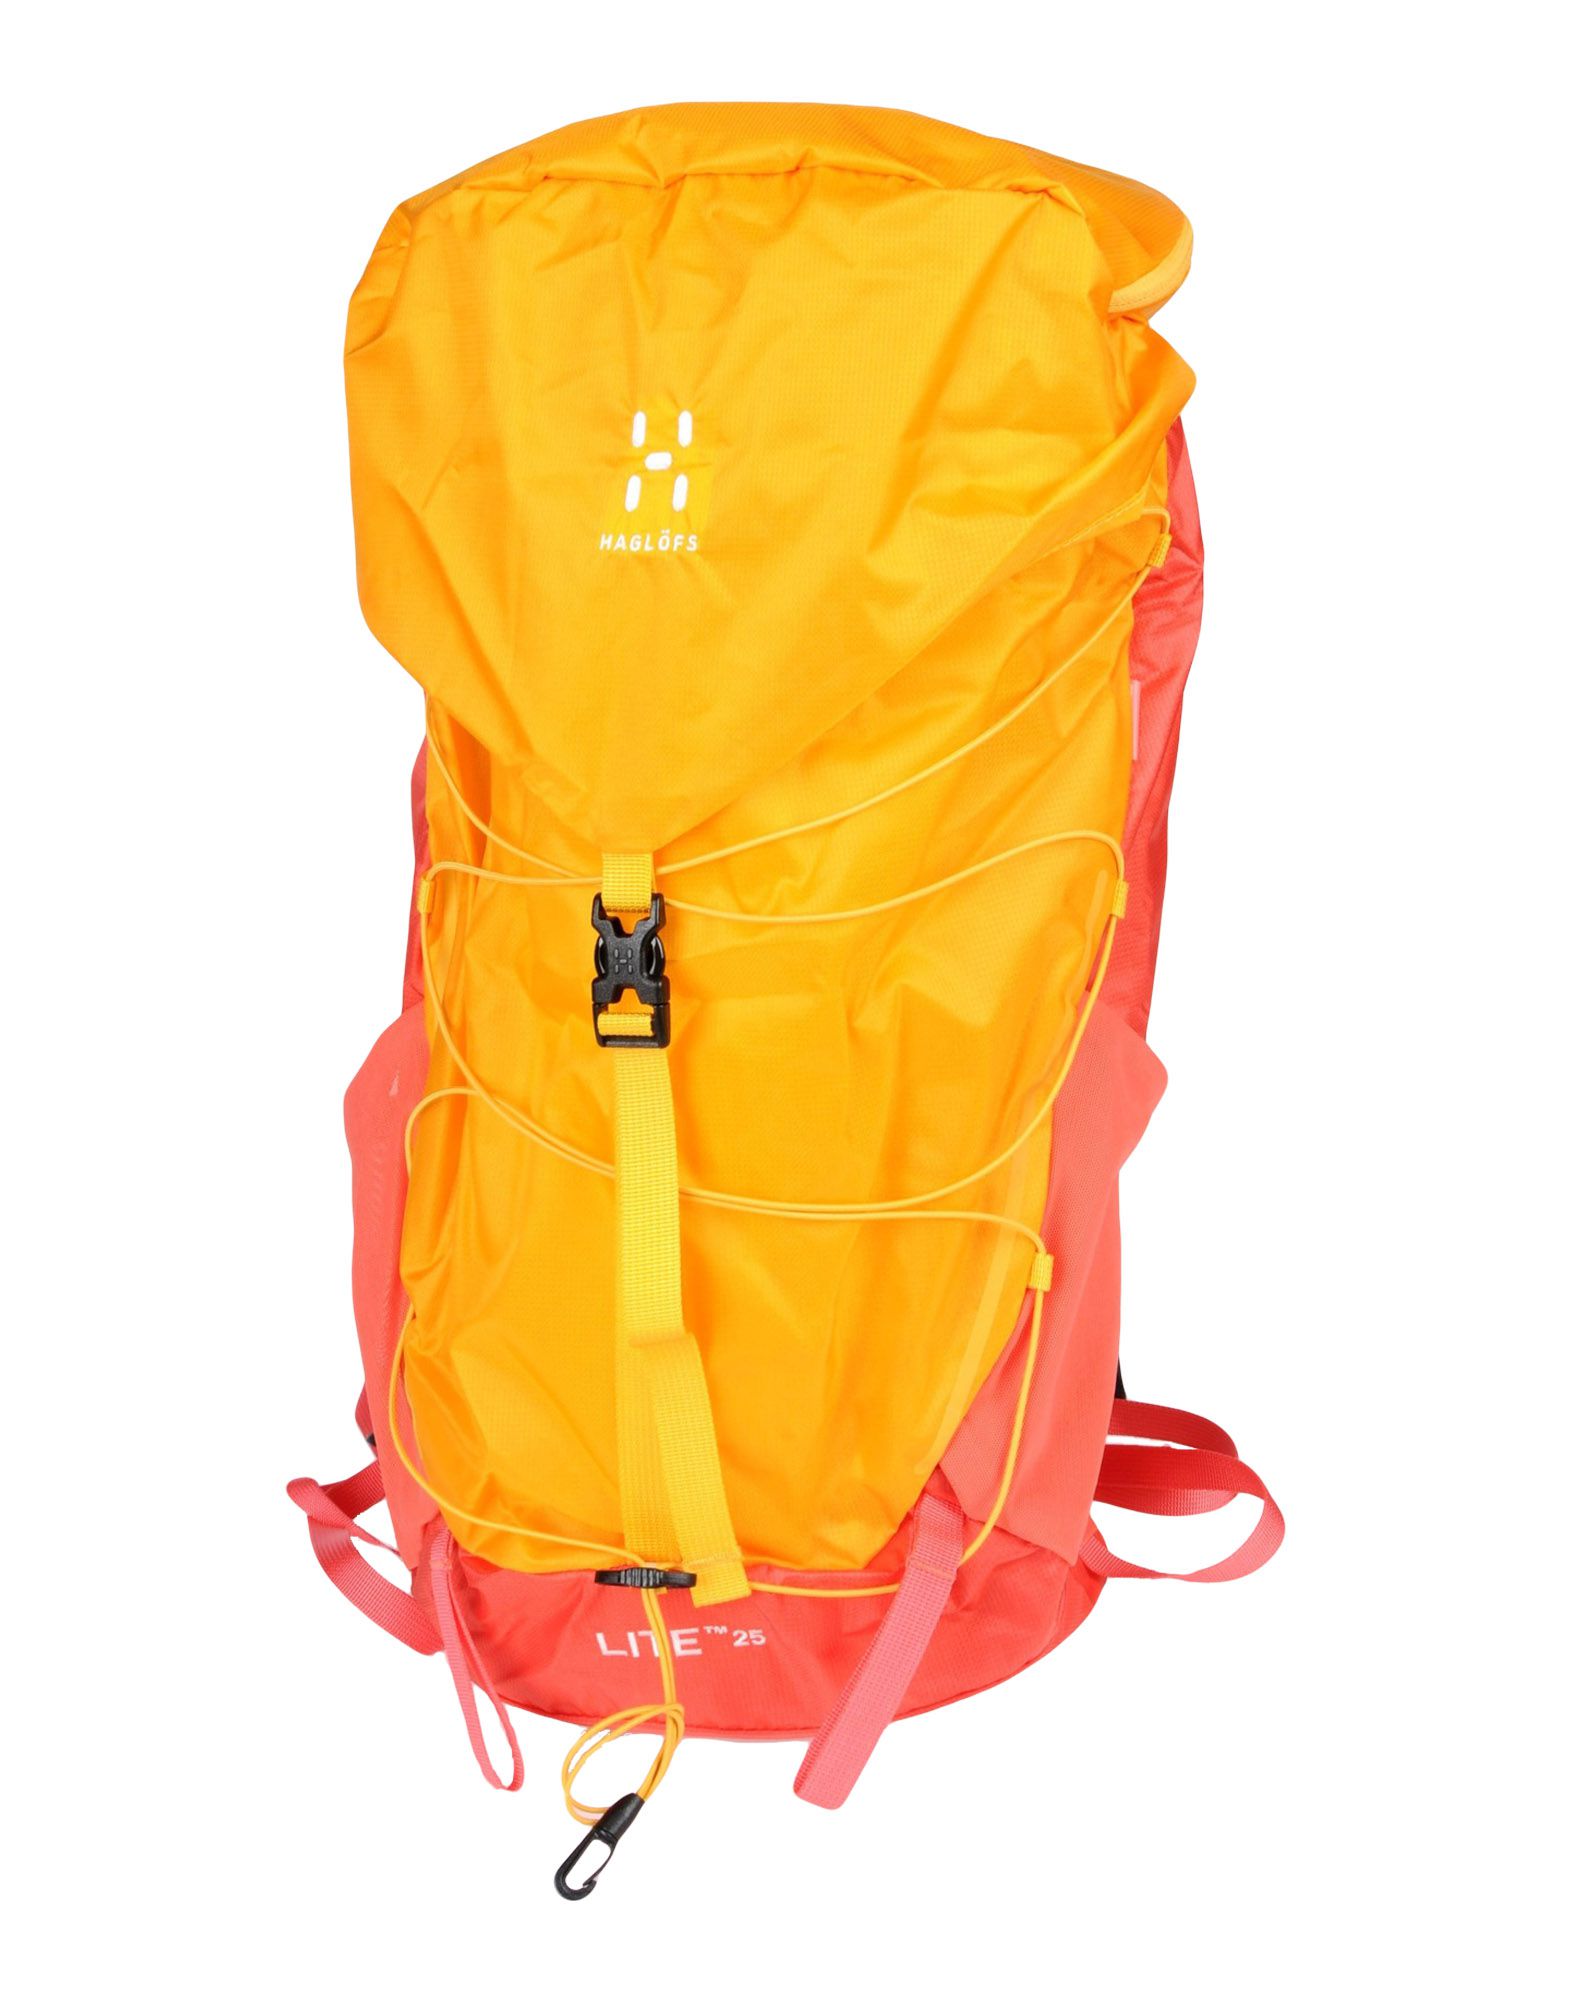 Деловая сумка  - Оранжевый цвет